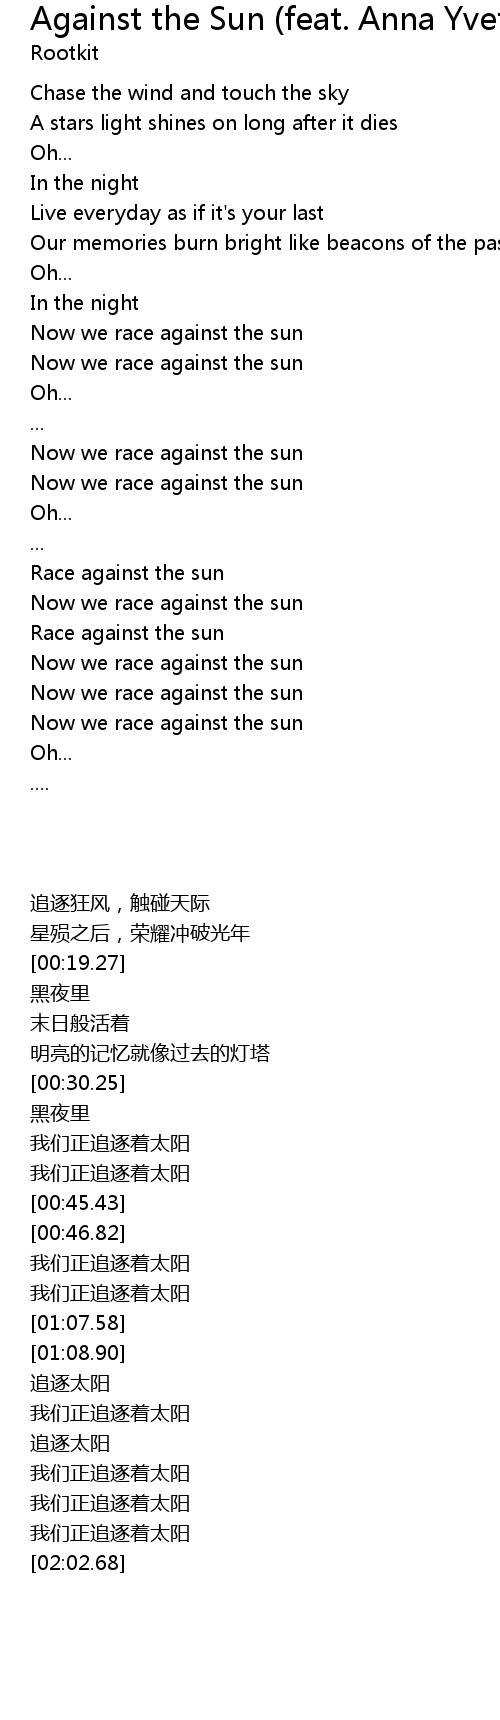 Against the Sun (feat. Anna Yvette) Lyrics